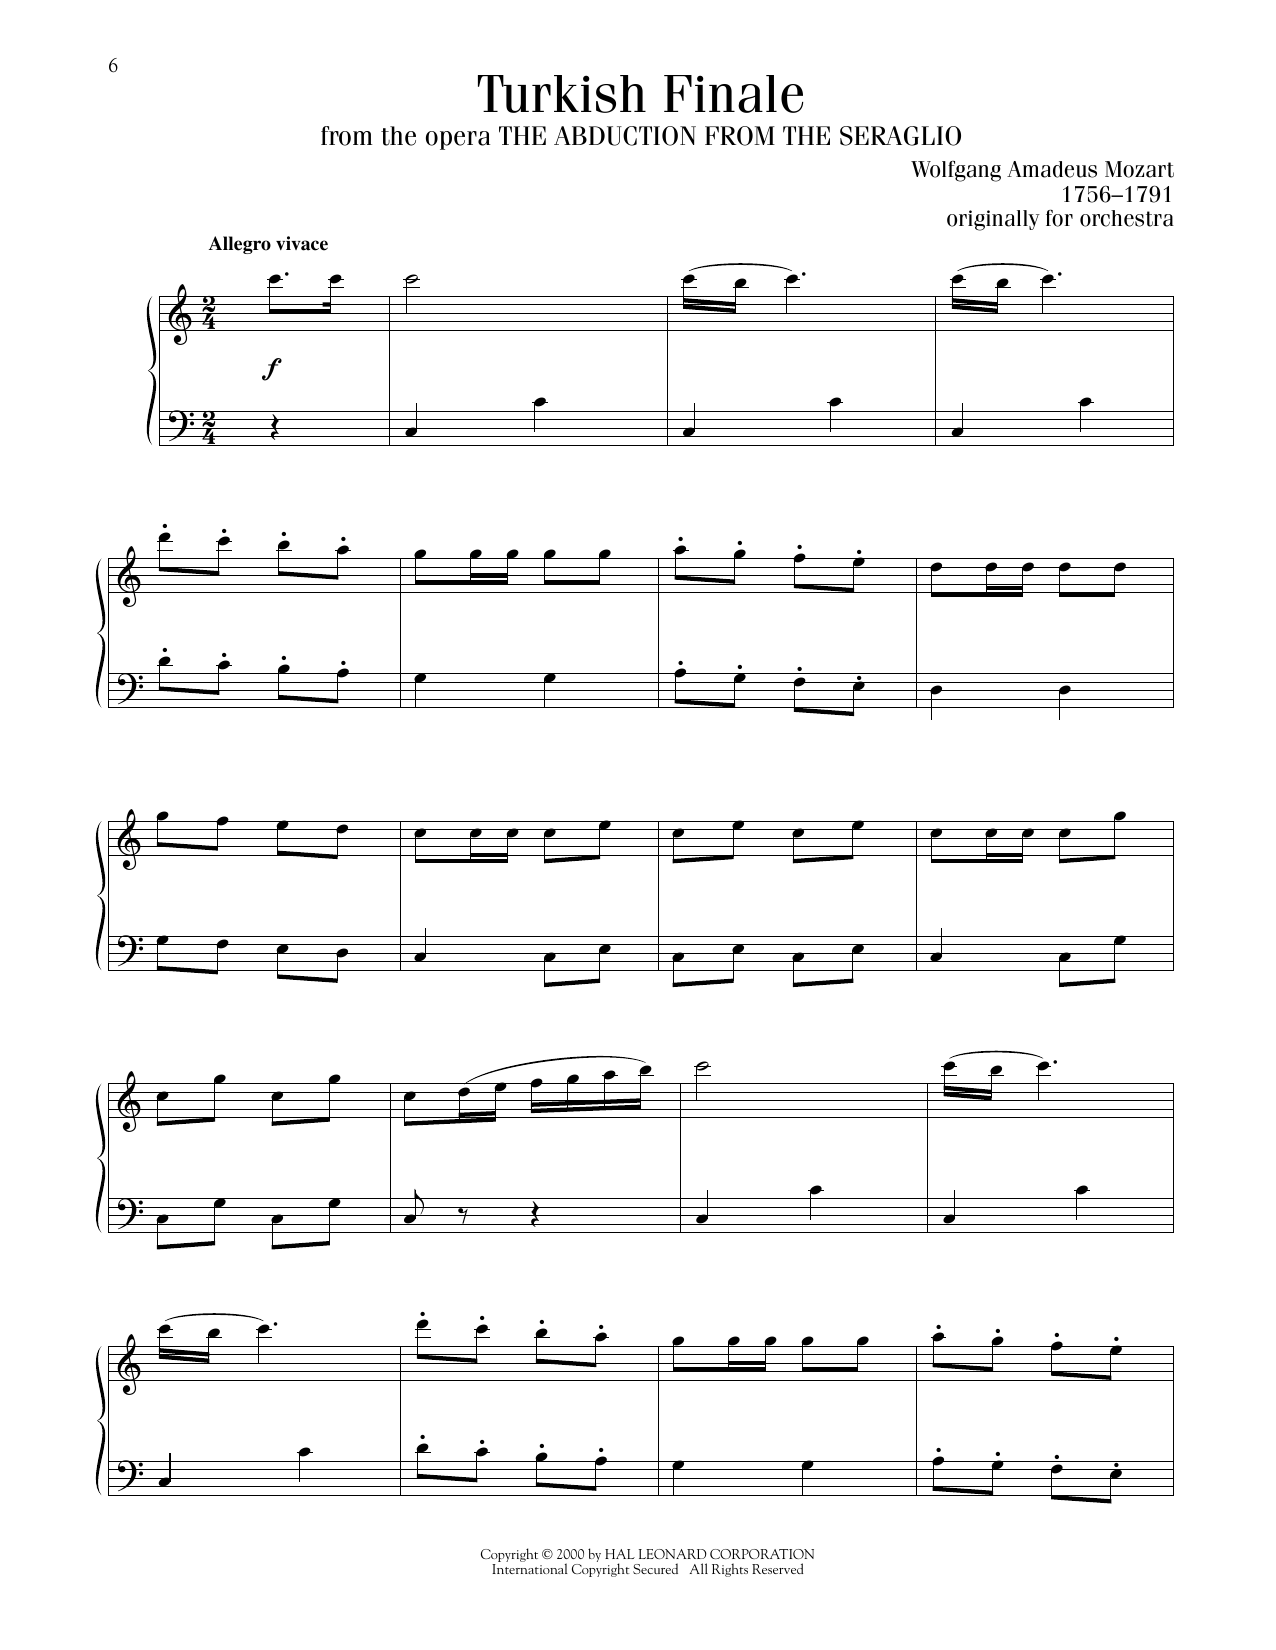 Wolfgang Amadeus Mozart Turkish Finale sheet music notes printable PDF score